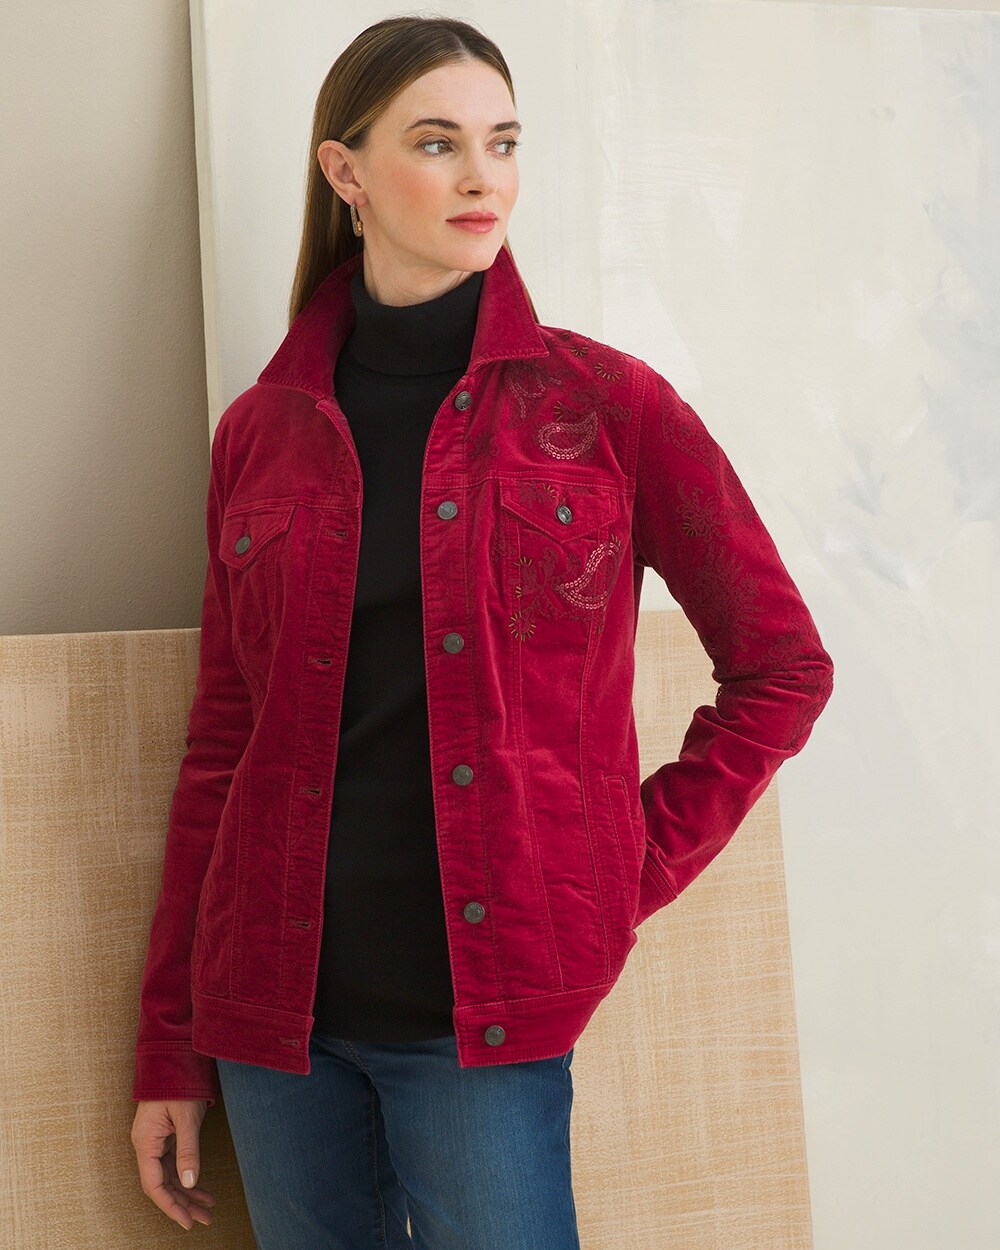 Embellished Red Velveteen Jacket